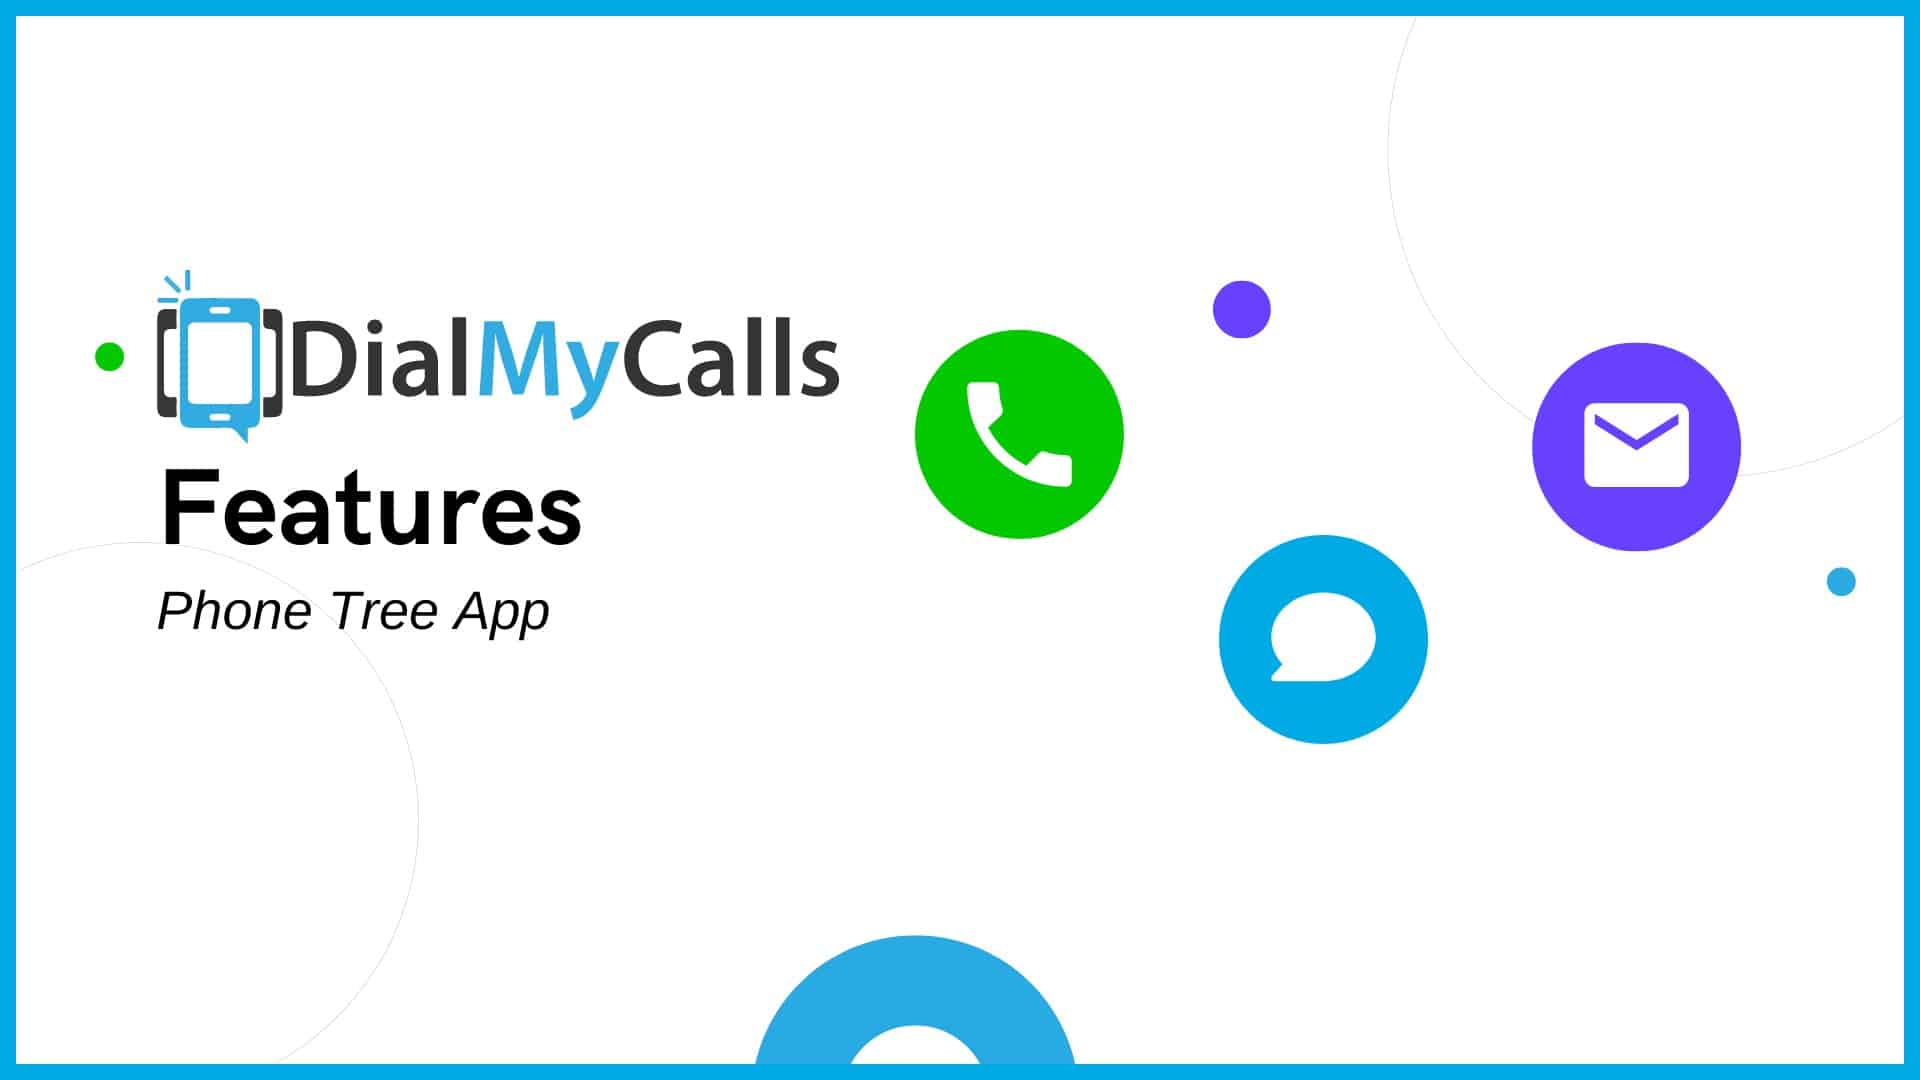 Phone Tree App - DialMyCalls